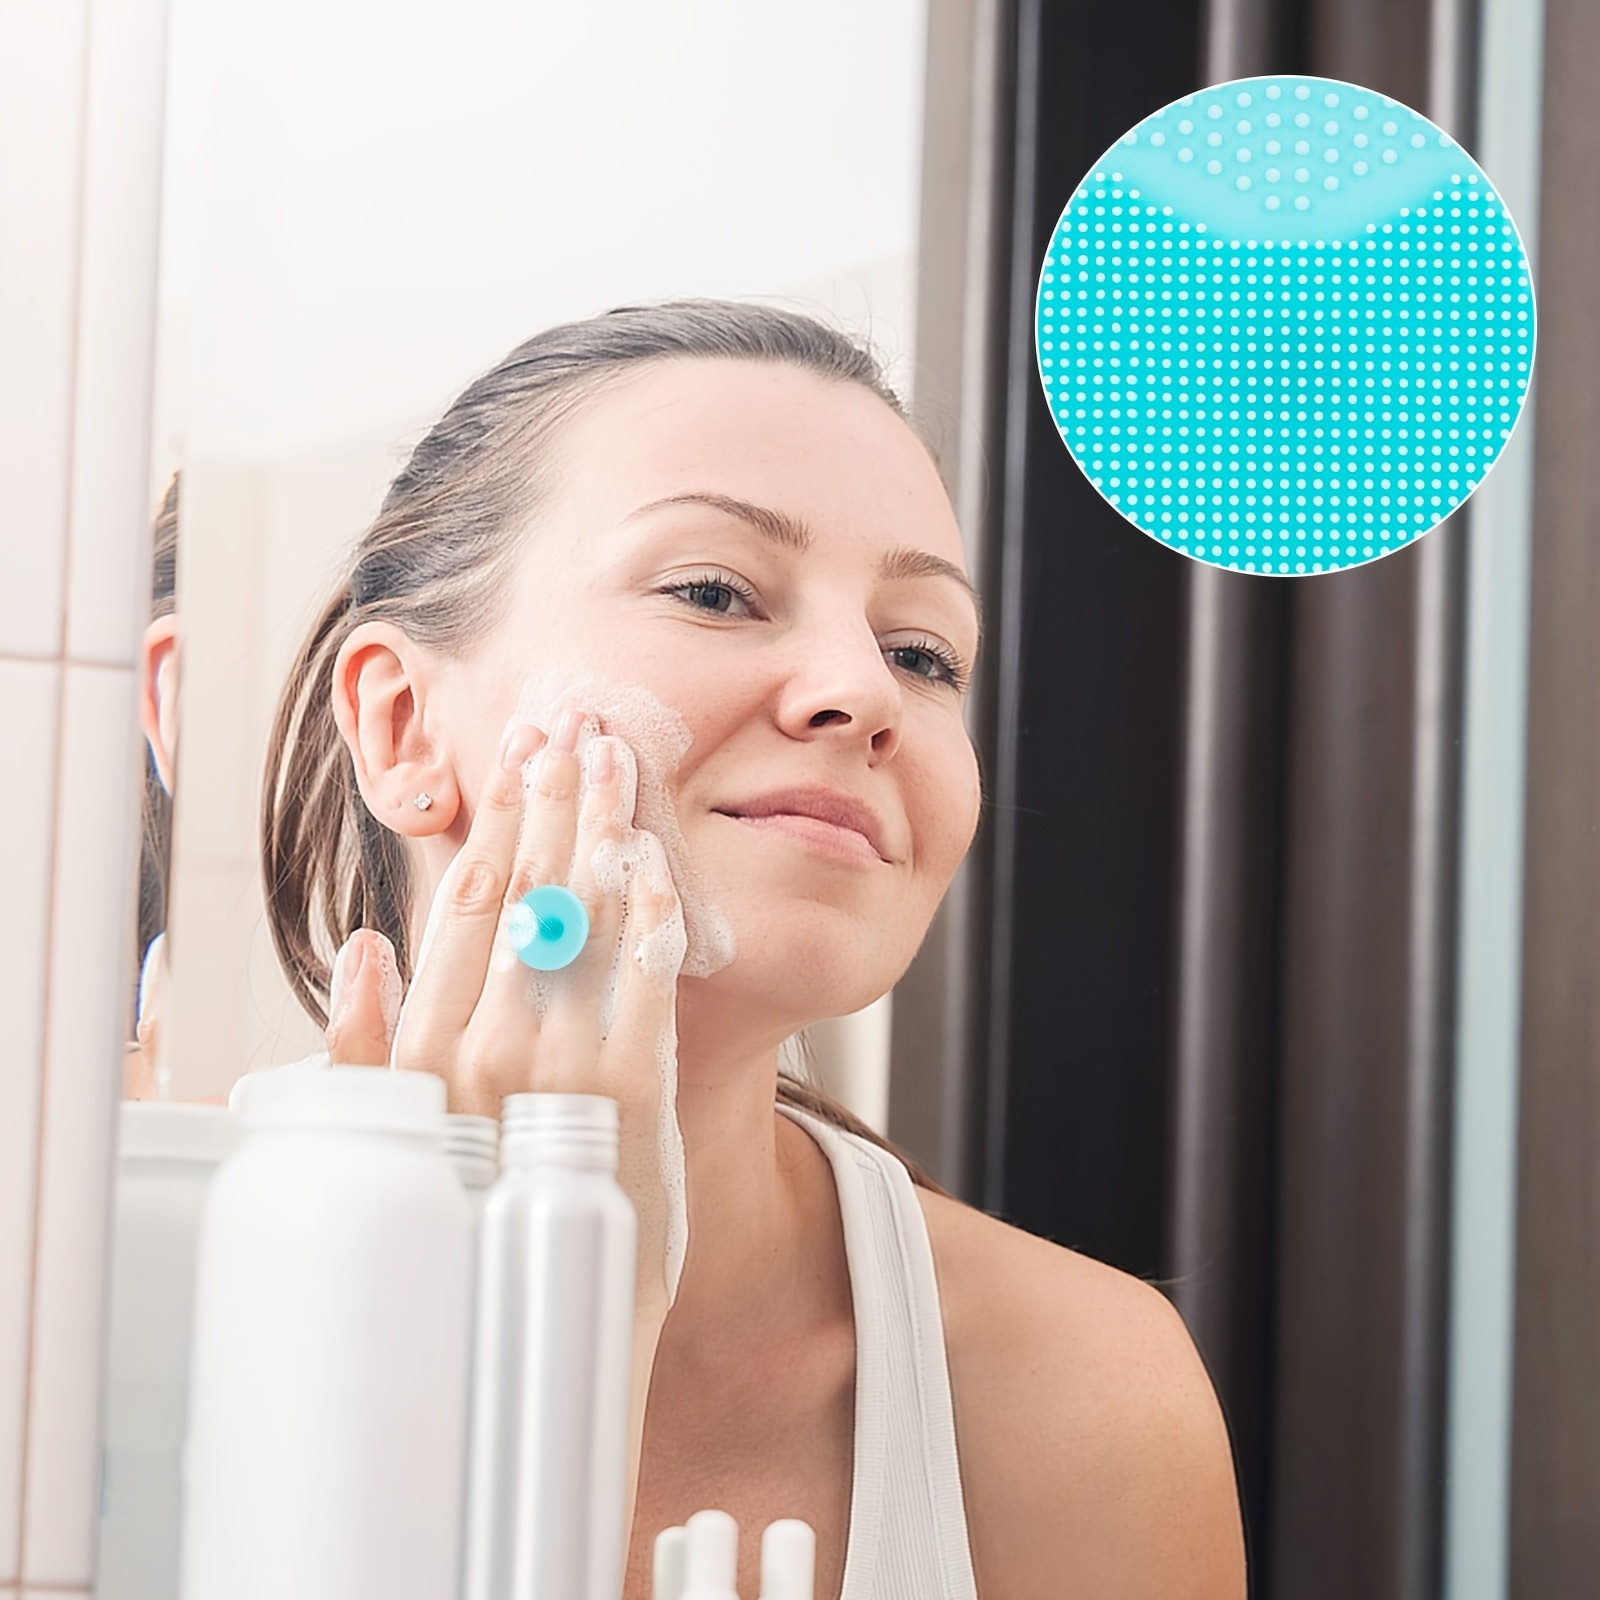 Limpieza facial de limpieza profunda-Cepillo limpiador suave y